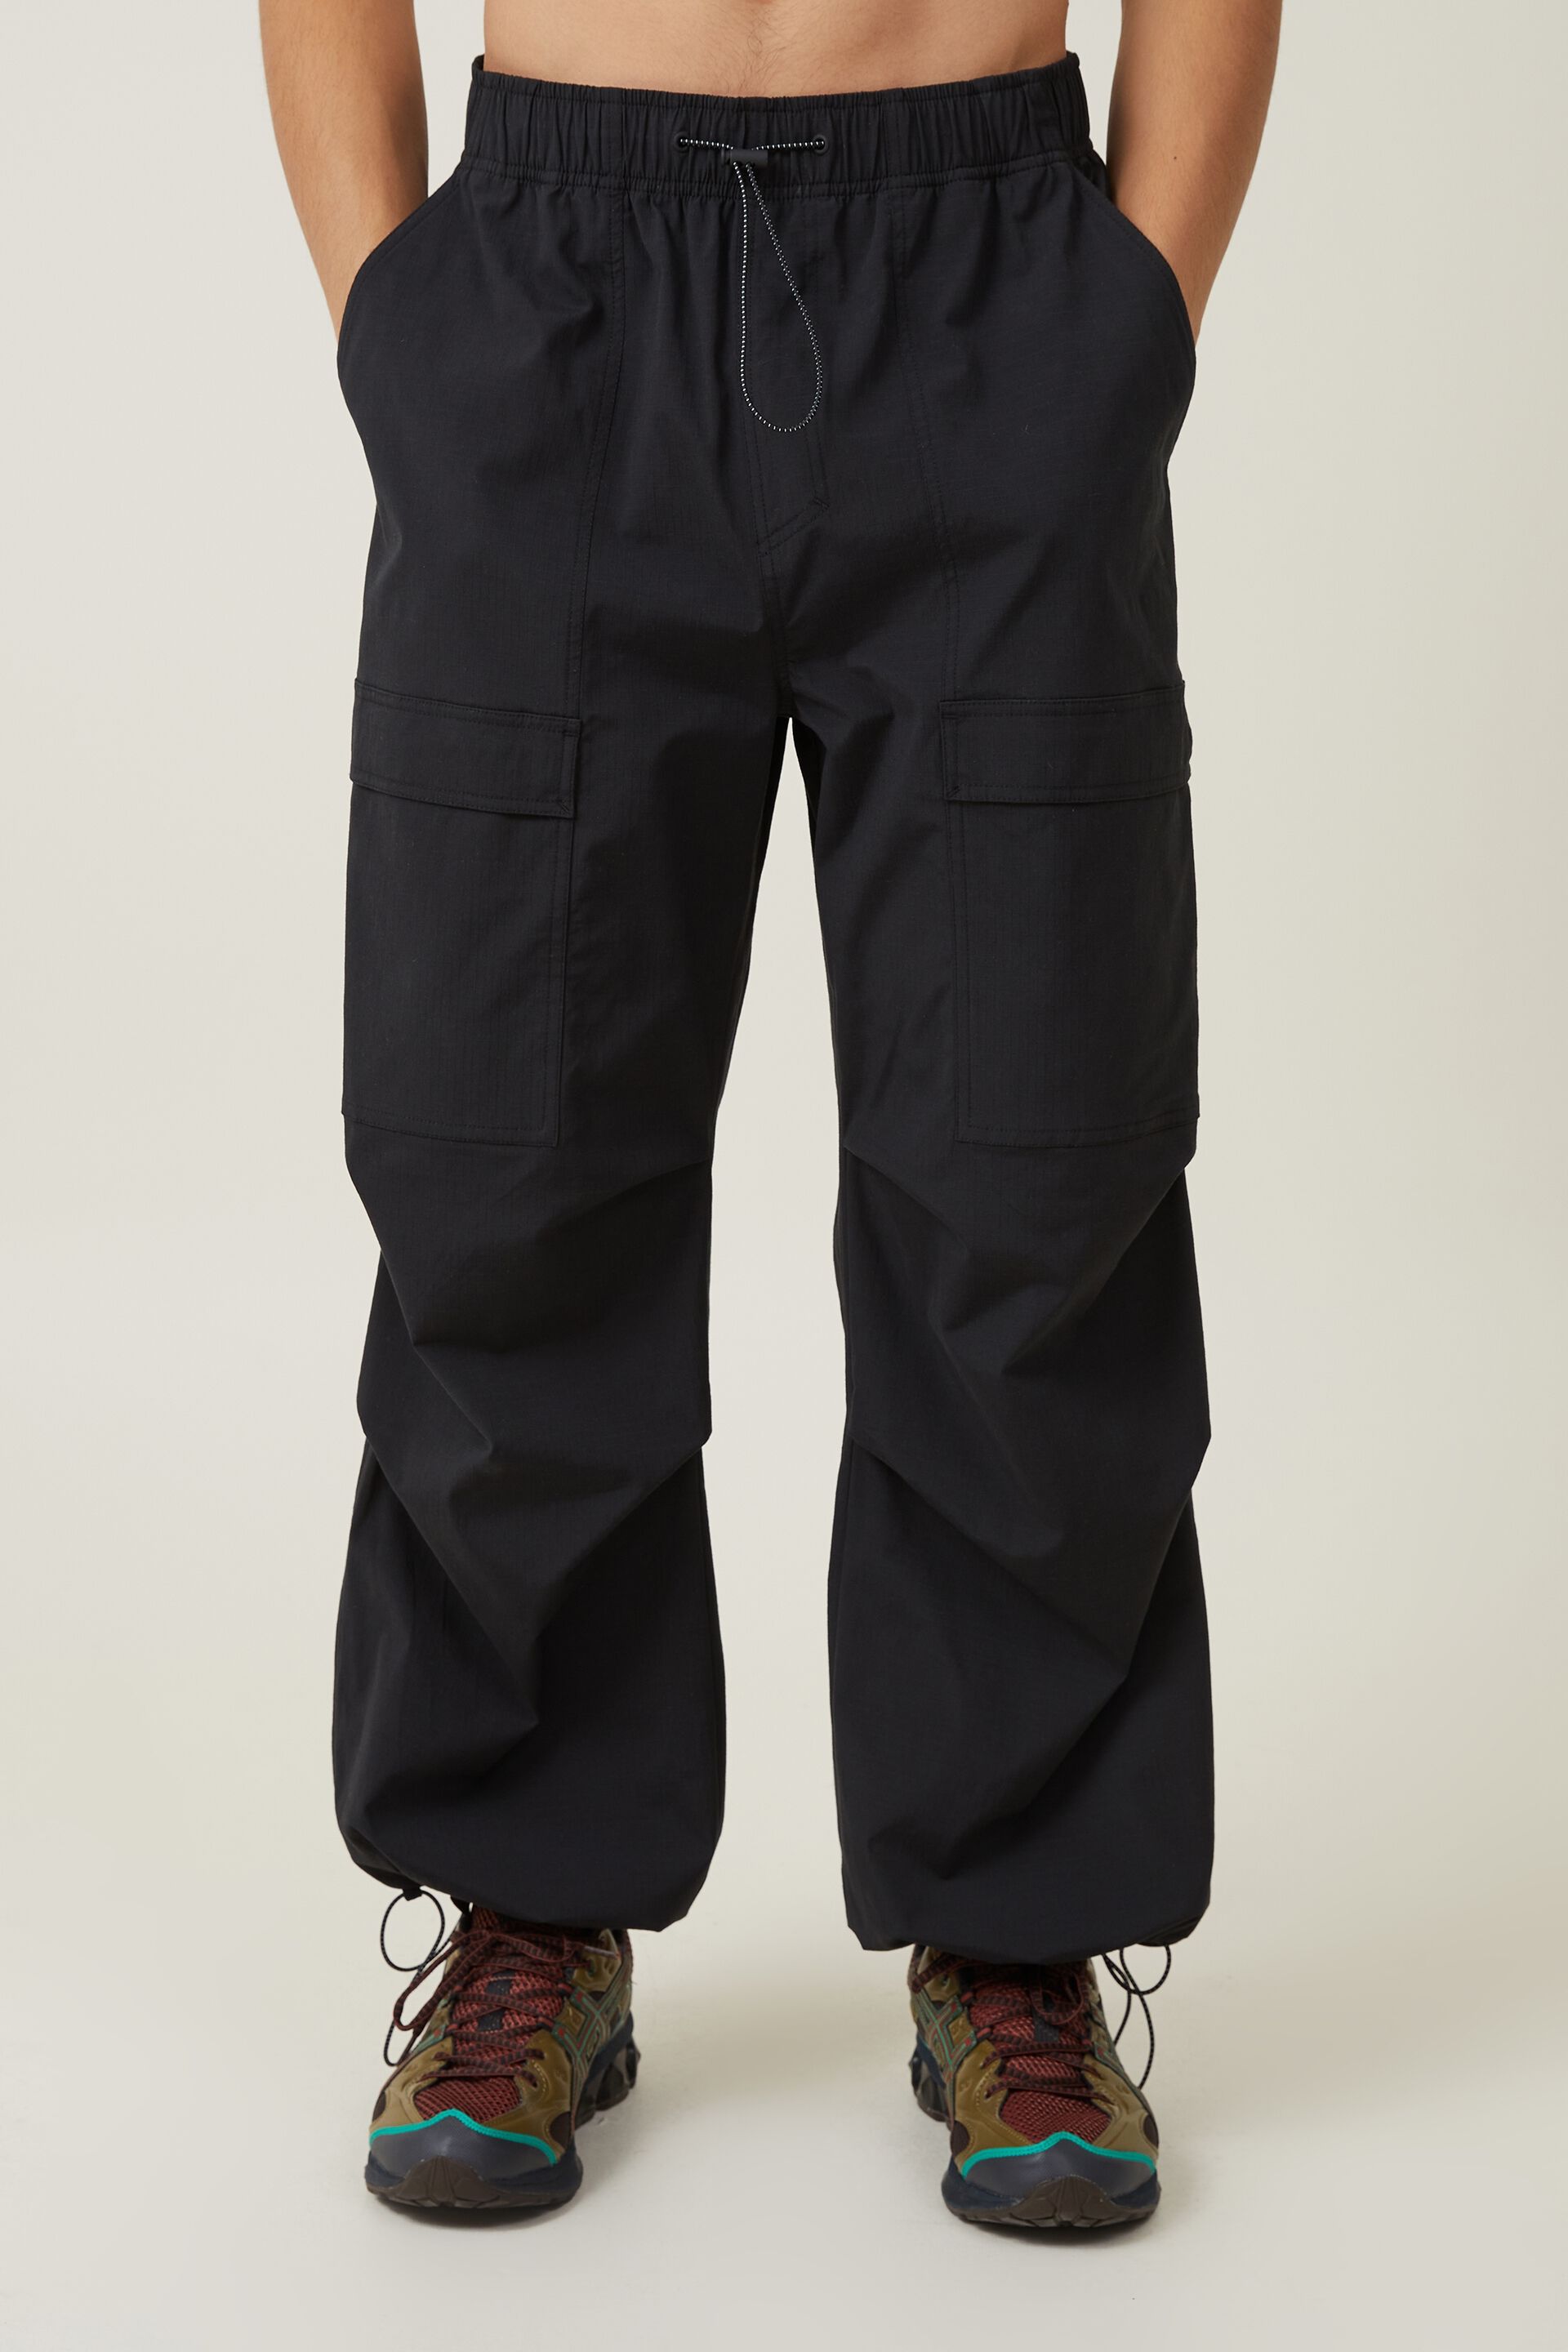 Loose Fit Parachute Pants - Denim gray - Men | H&M CA